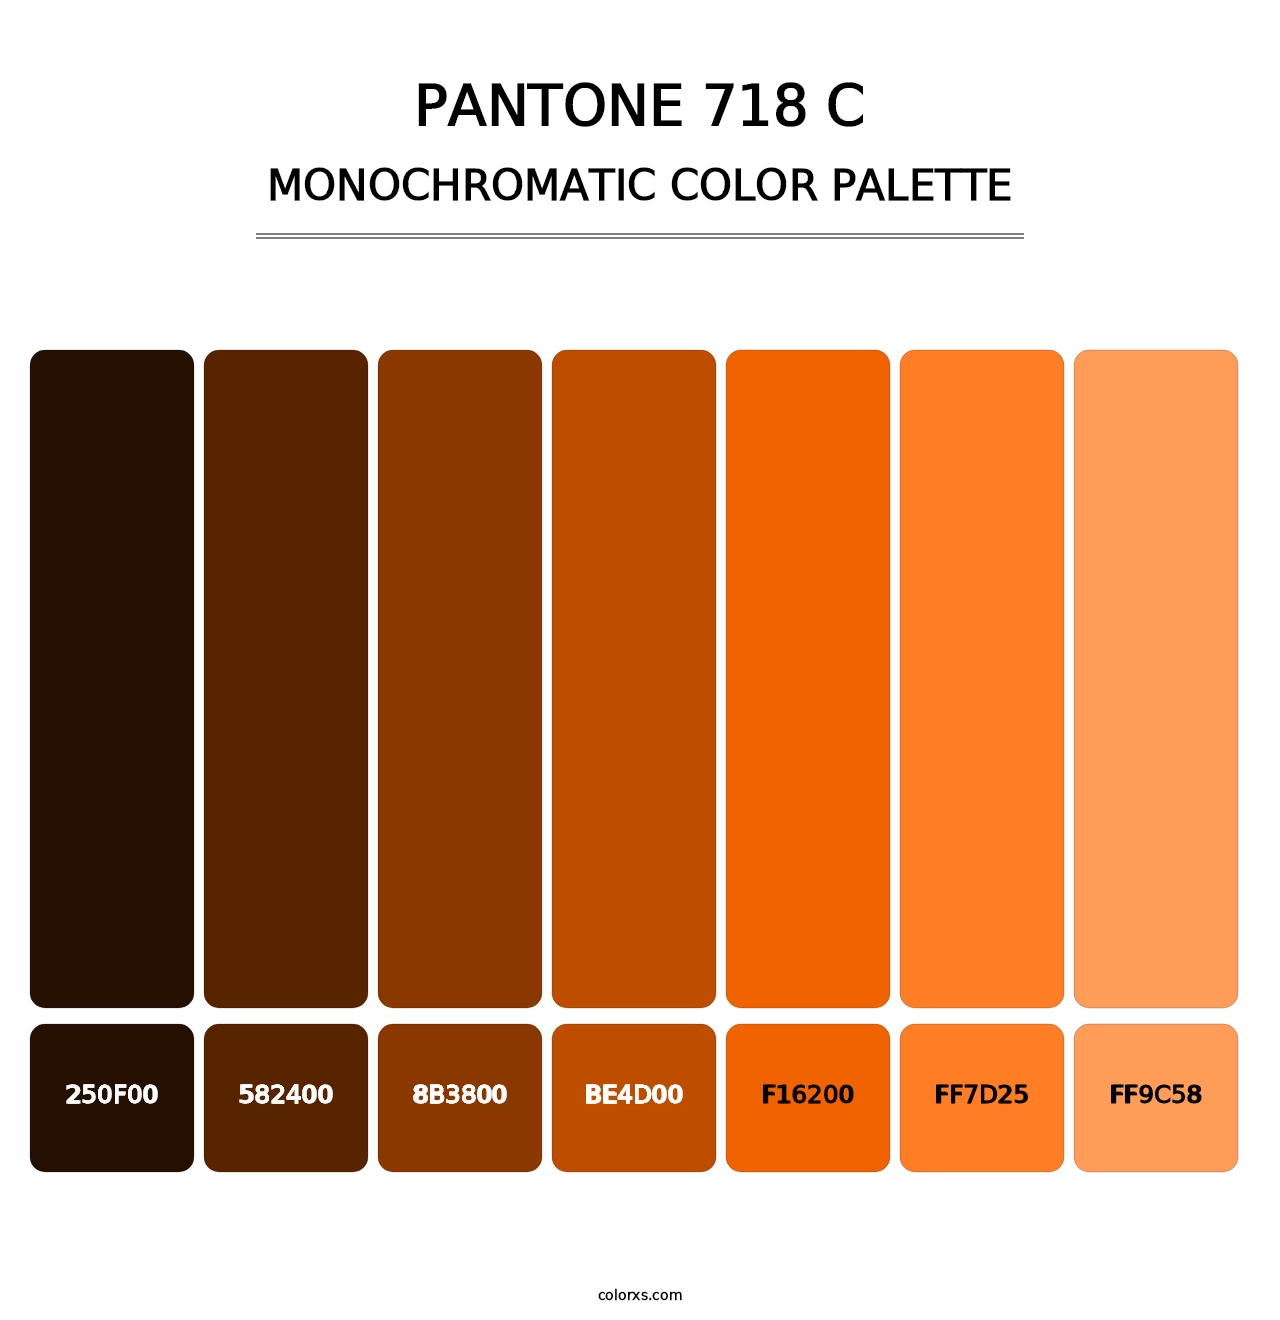 PANTONE 718 C - Monochromatic Color Palette